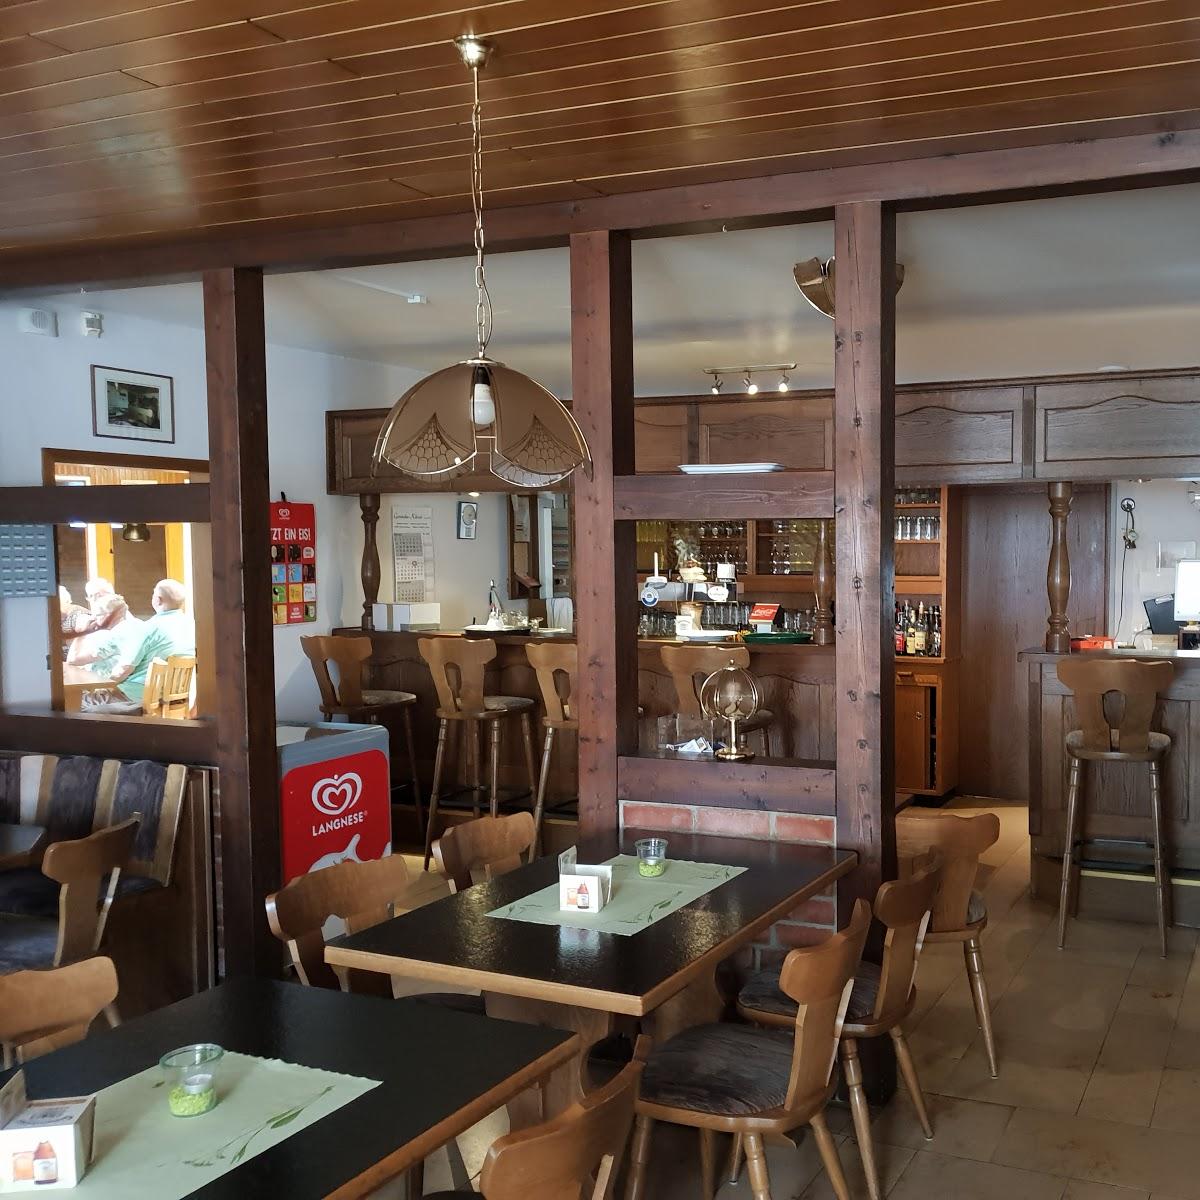 Restaurant "Gasthaus Nienau" in  Artlenburg